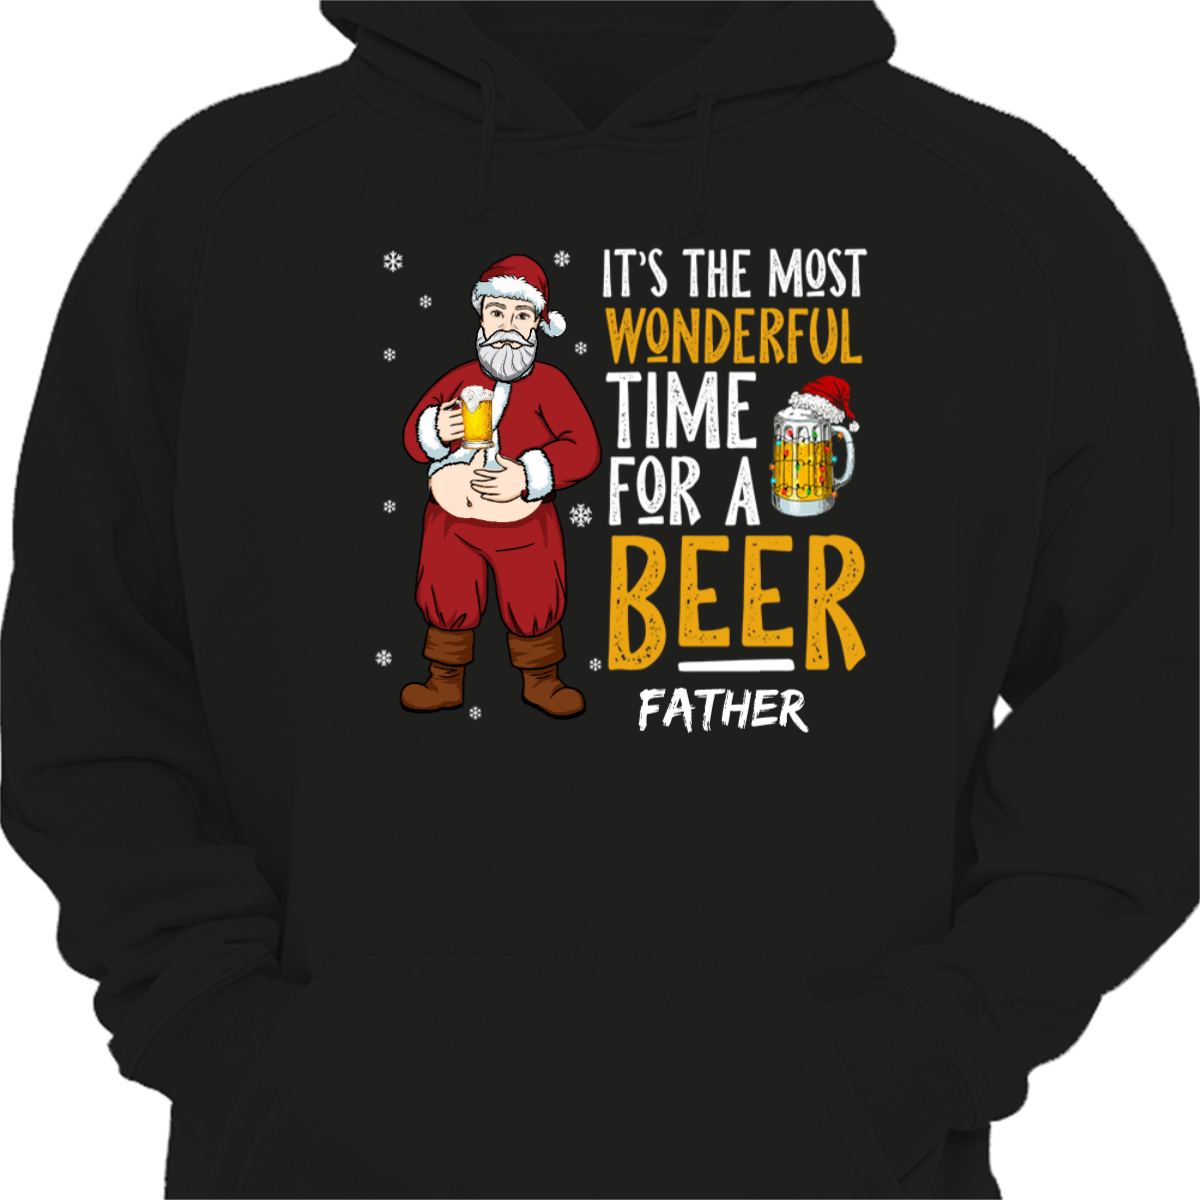 ビールのお父さんおじいちゃんサンタ パーカー スウェットシャツの最も素晴らしい時間